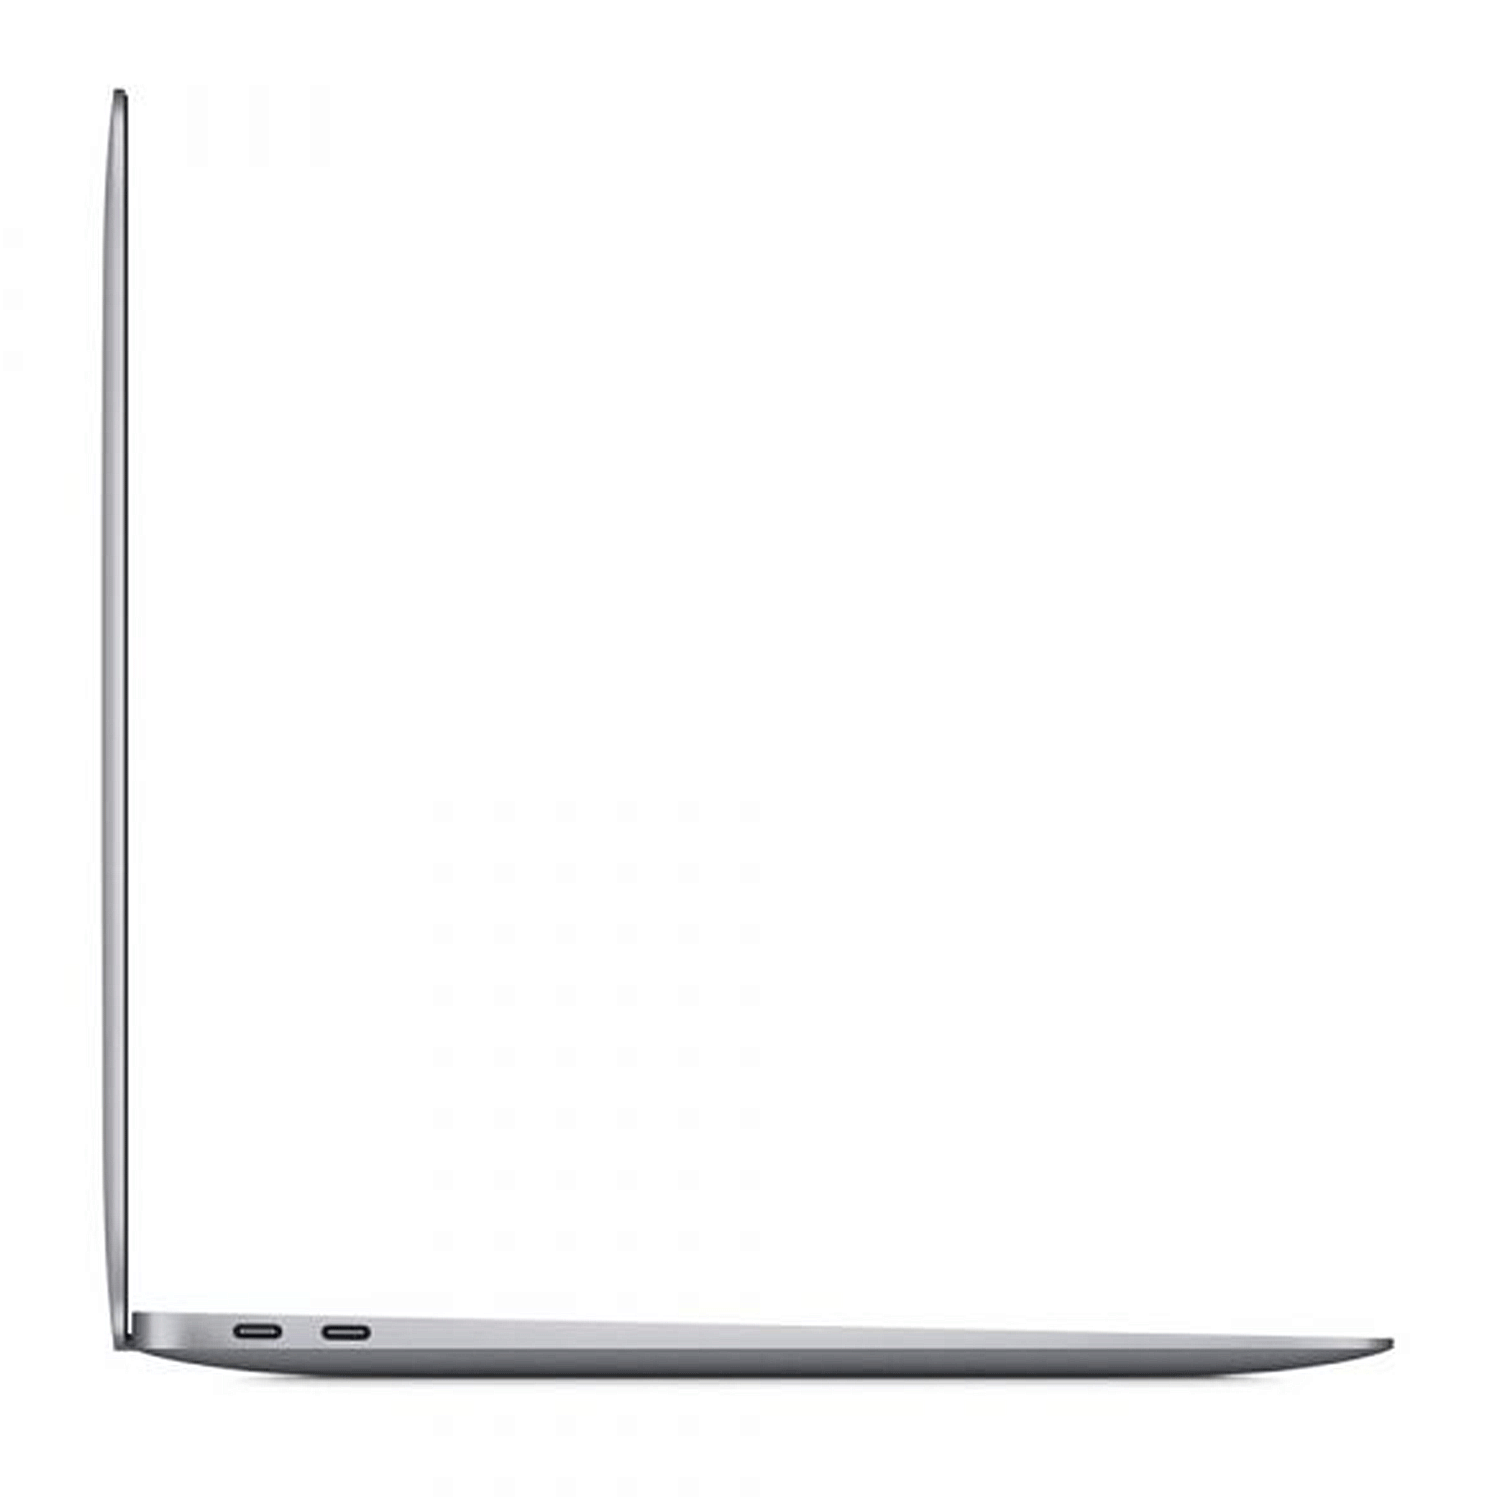 Apple Macbook Air *CPO* FGN63LL/A 13.3" Chip M1 256GB SSD / 8GB RAM - Cinza (Sem Garantia)